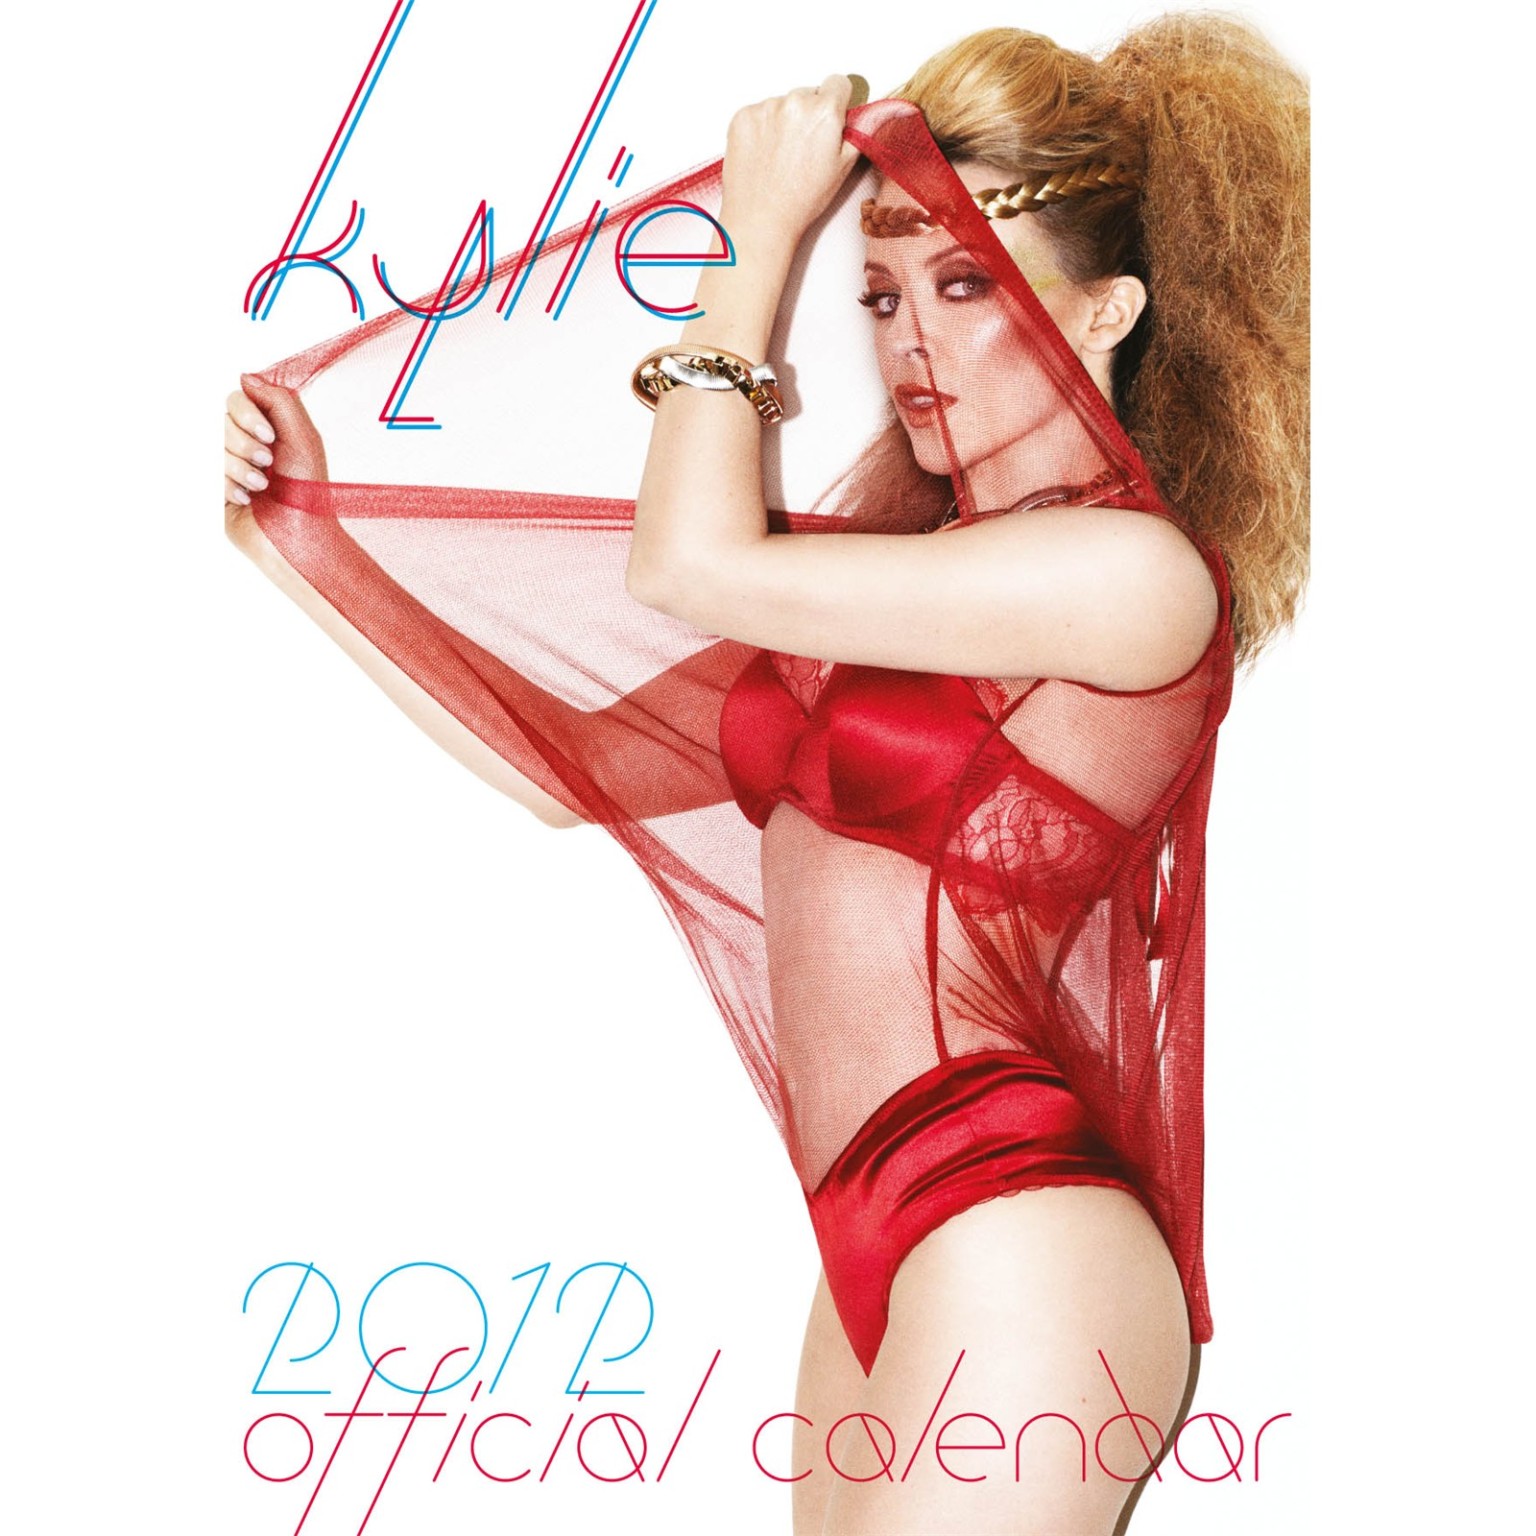 Kylie minogue en topless pero ocultando sus tetas para su calendario oficial 2012
 #75285363